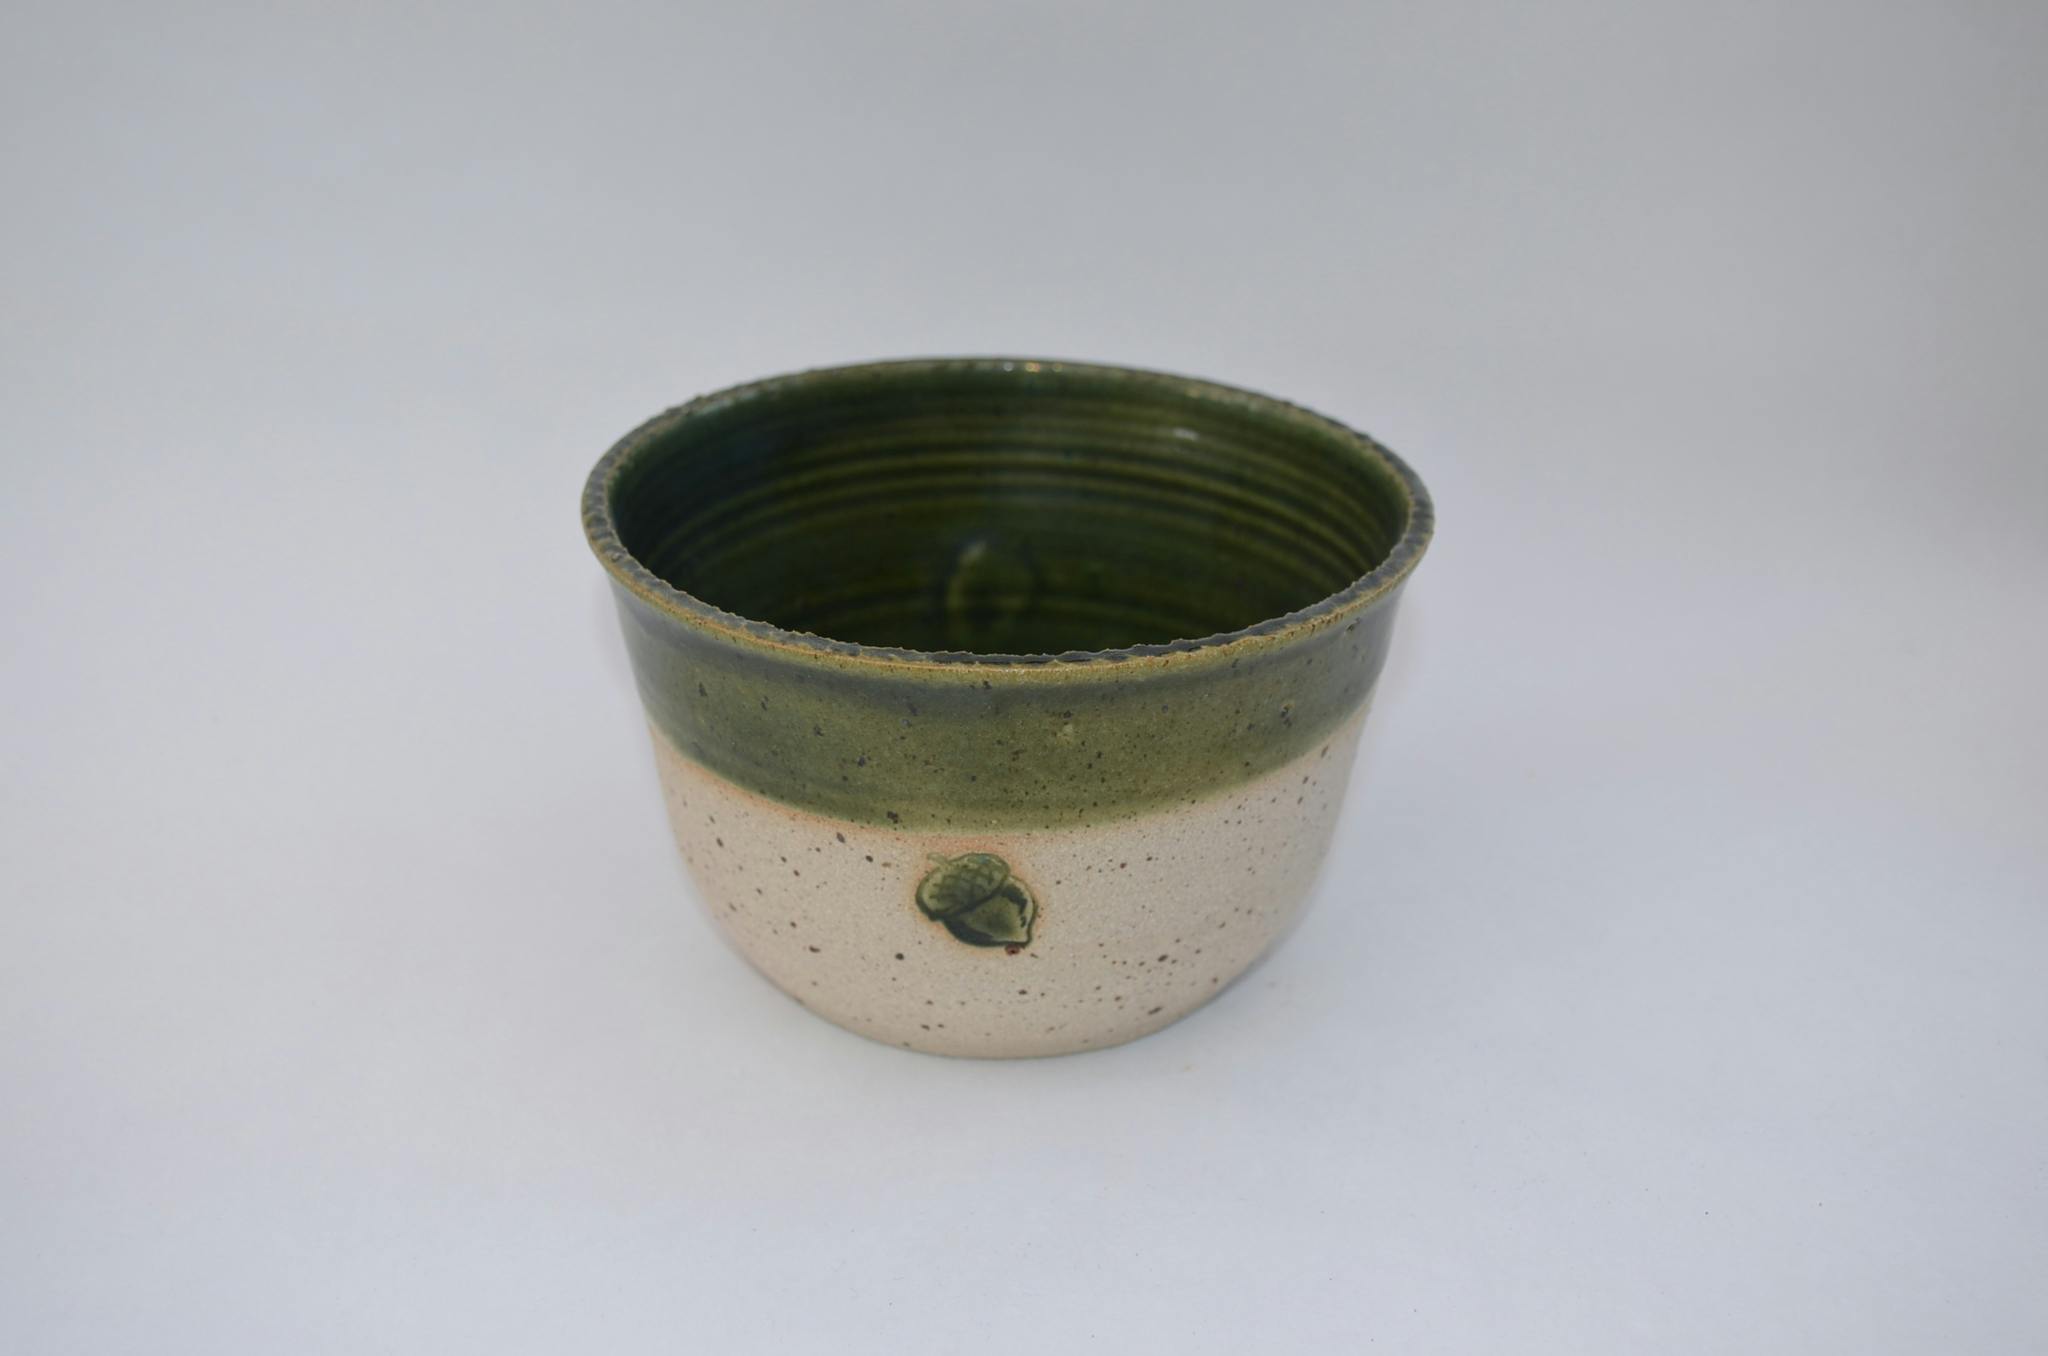 Ek drejad frukostskål med ekollon i grönt - Sagolika Keramik